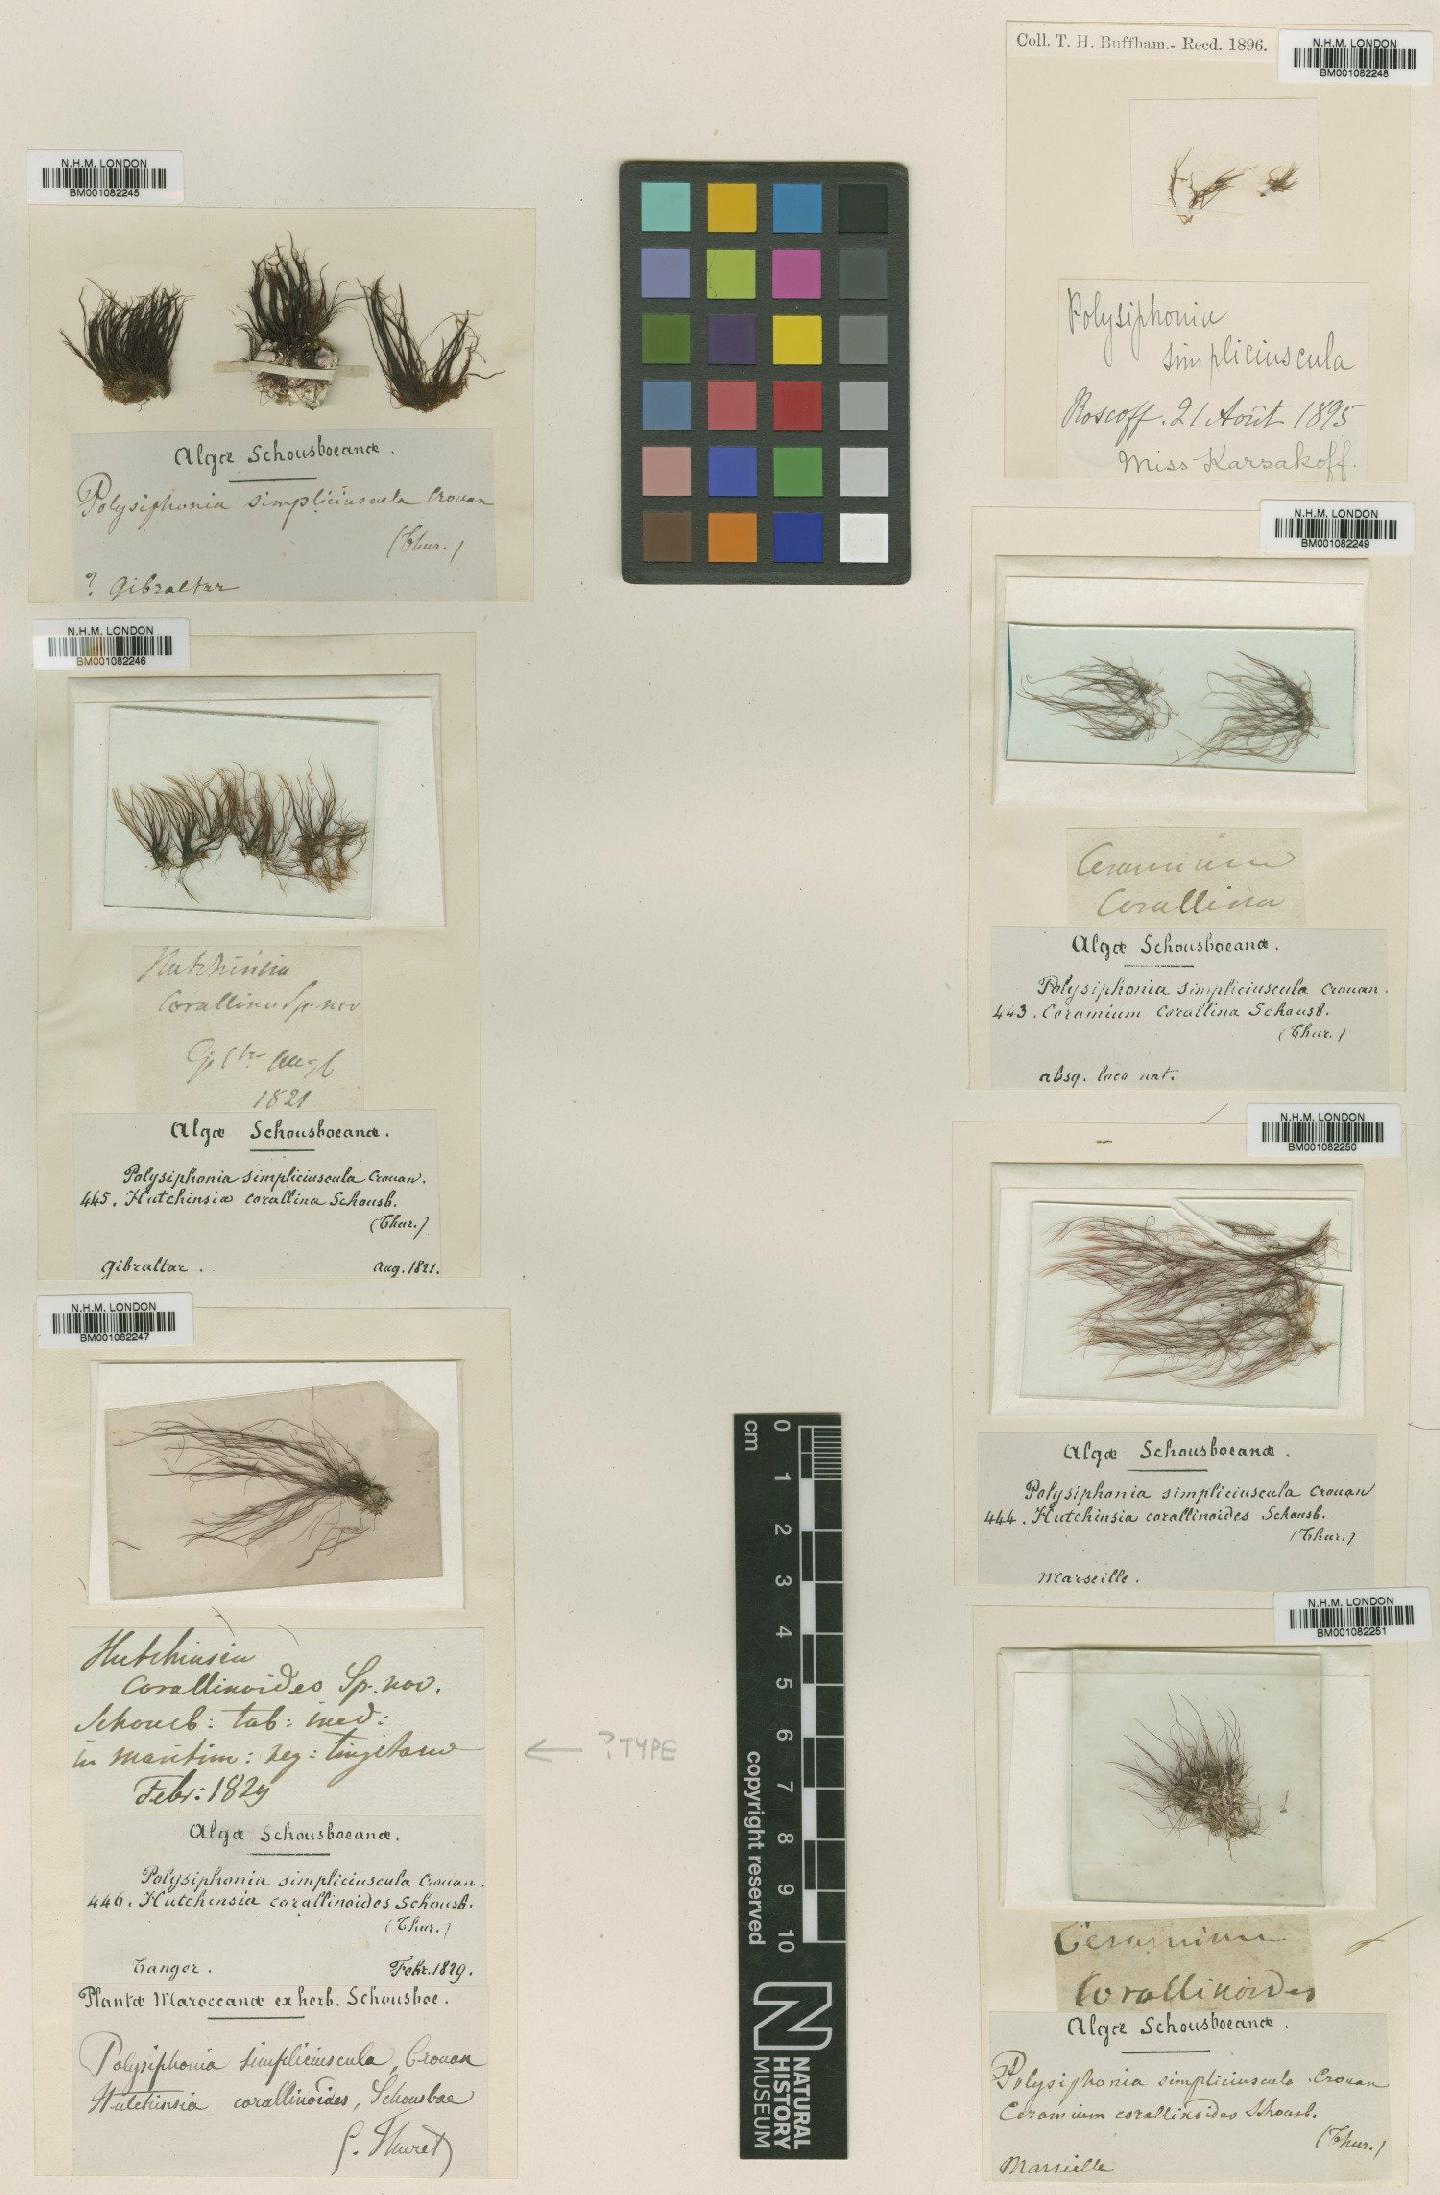 To NHMUK collection (Polysiphonia simpliciuscula P.Crouan & H.Crouan; NHMUK:ecatalogue:2307338)